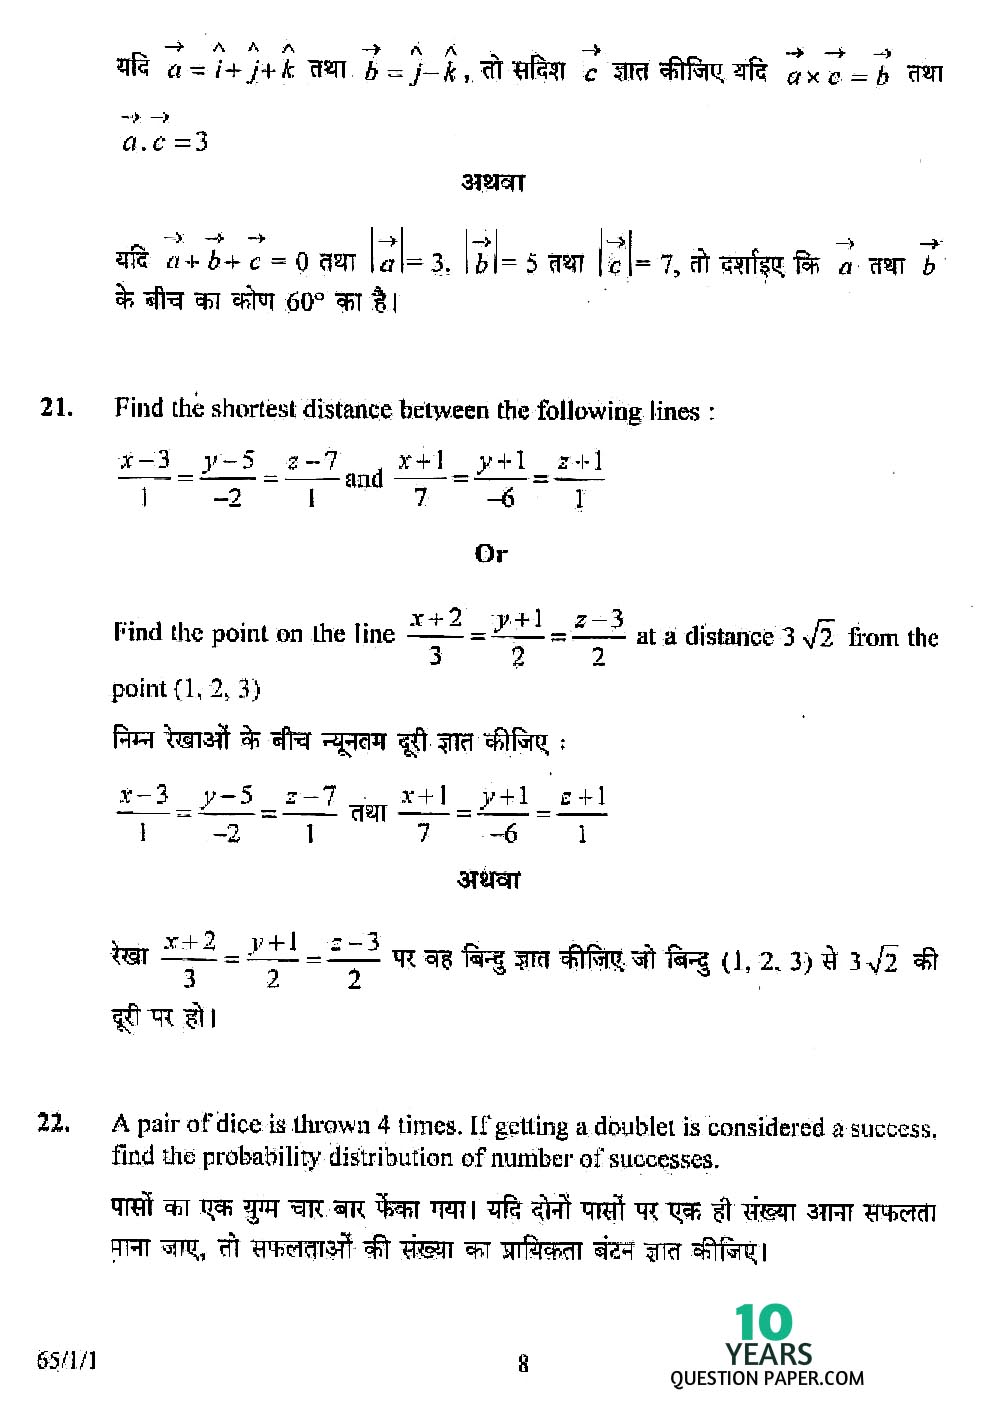 CBSE Class 12 Mathematics 2008 Question Paper